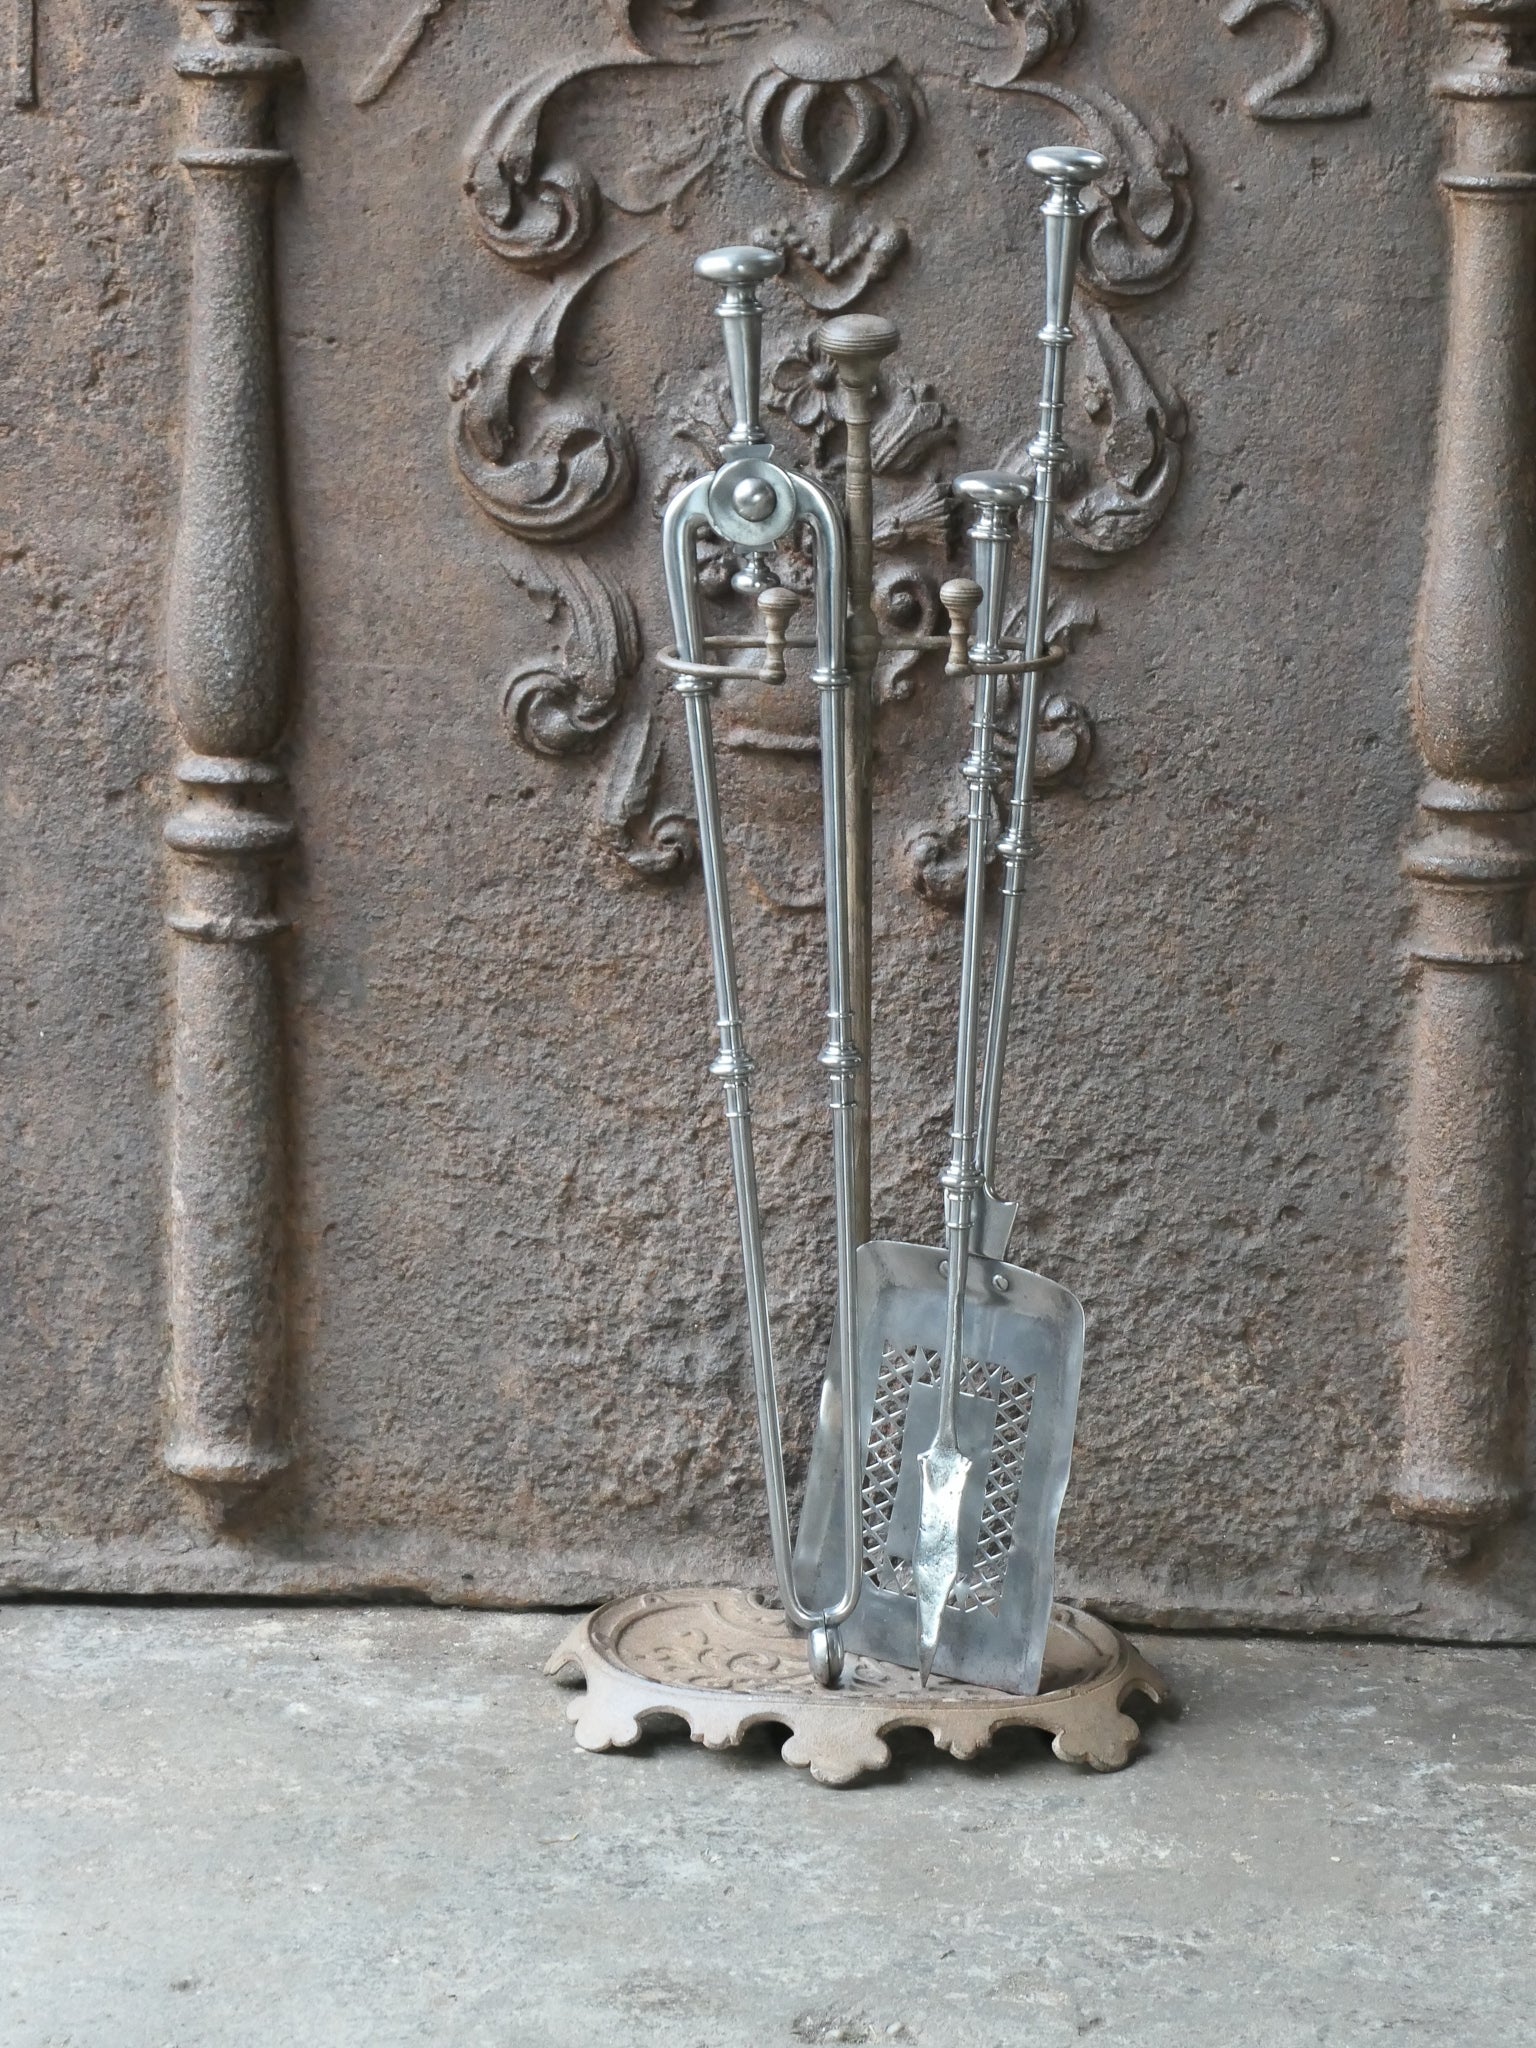 Magnifique ensemble d'outils de cheminée géorgien anglais du 18e - 19e siècle. Le set d'outils comprend une pince, une pelle, un tisonnier et un support. Le support est en fonte et les outils sont en acier poli. L'ensemble est en bon état et peut